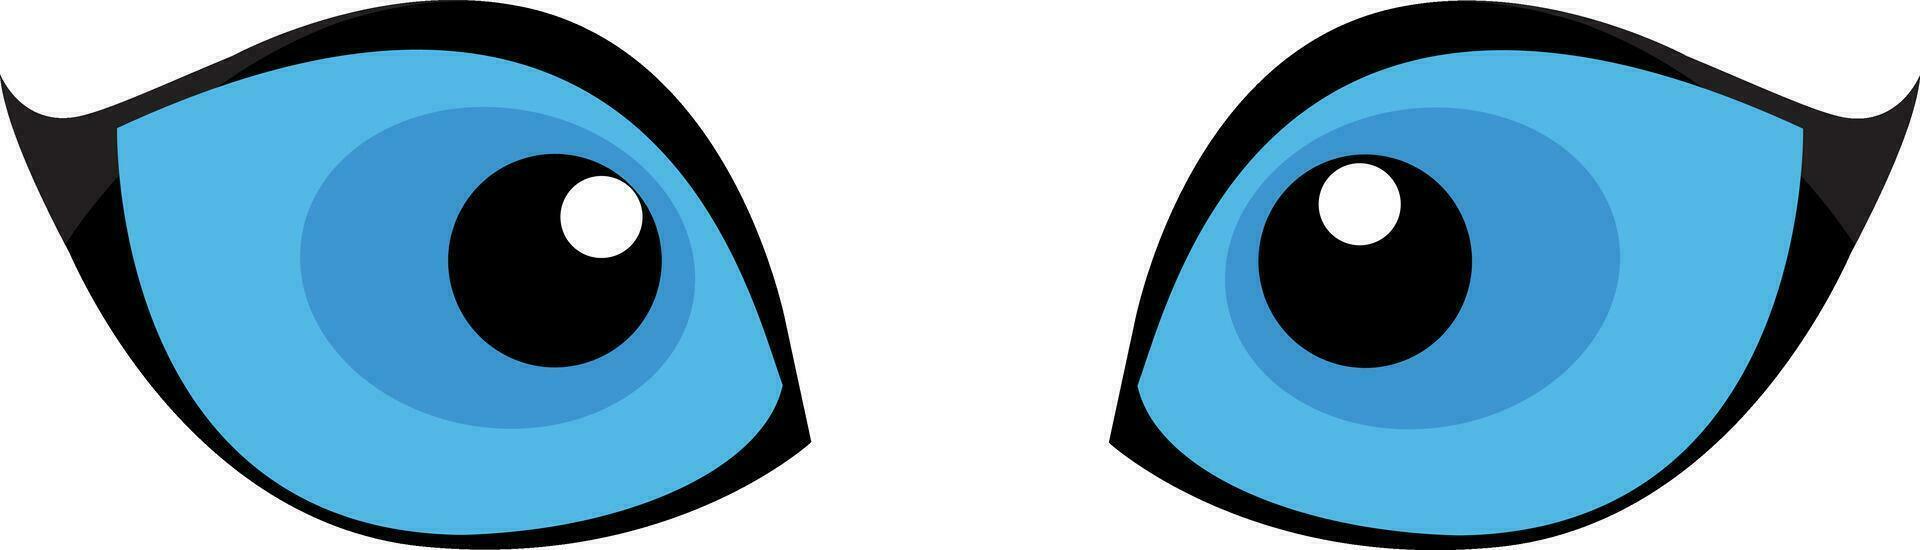 blå katt ögon isolerat på vit bakgrund. vektor illustration